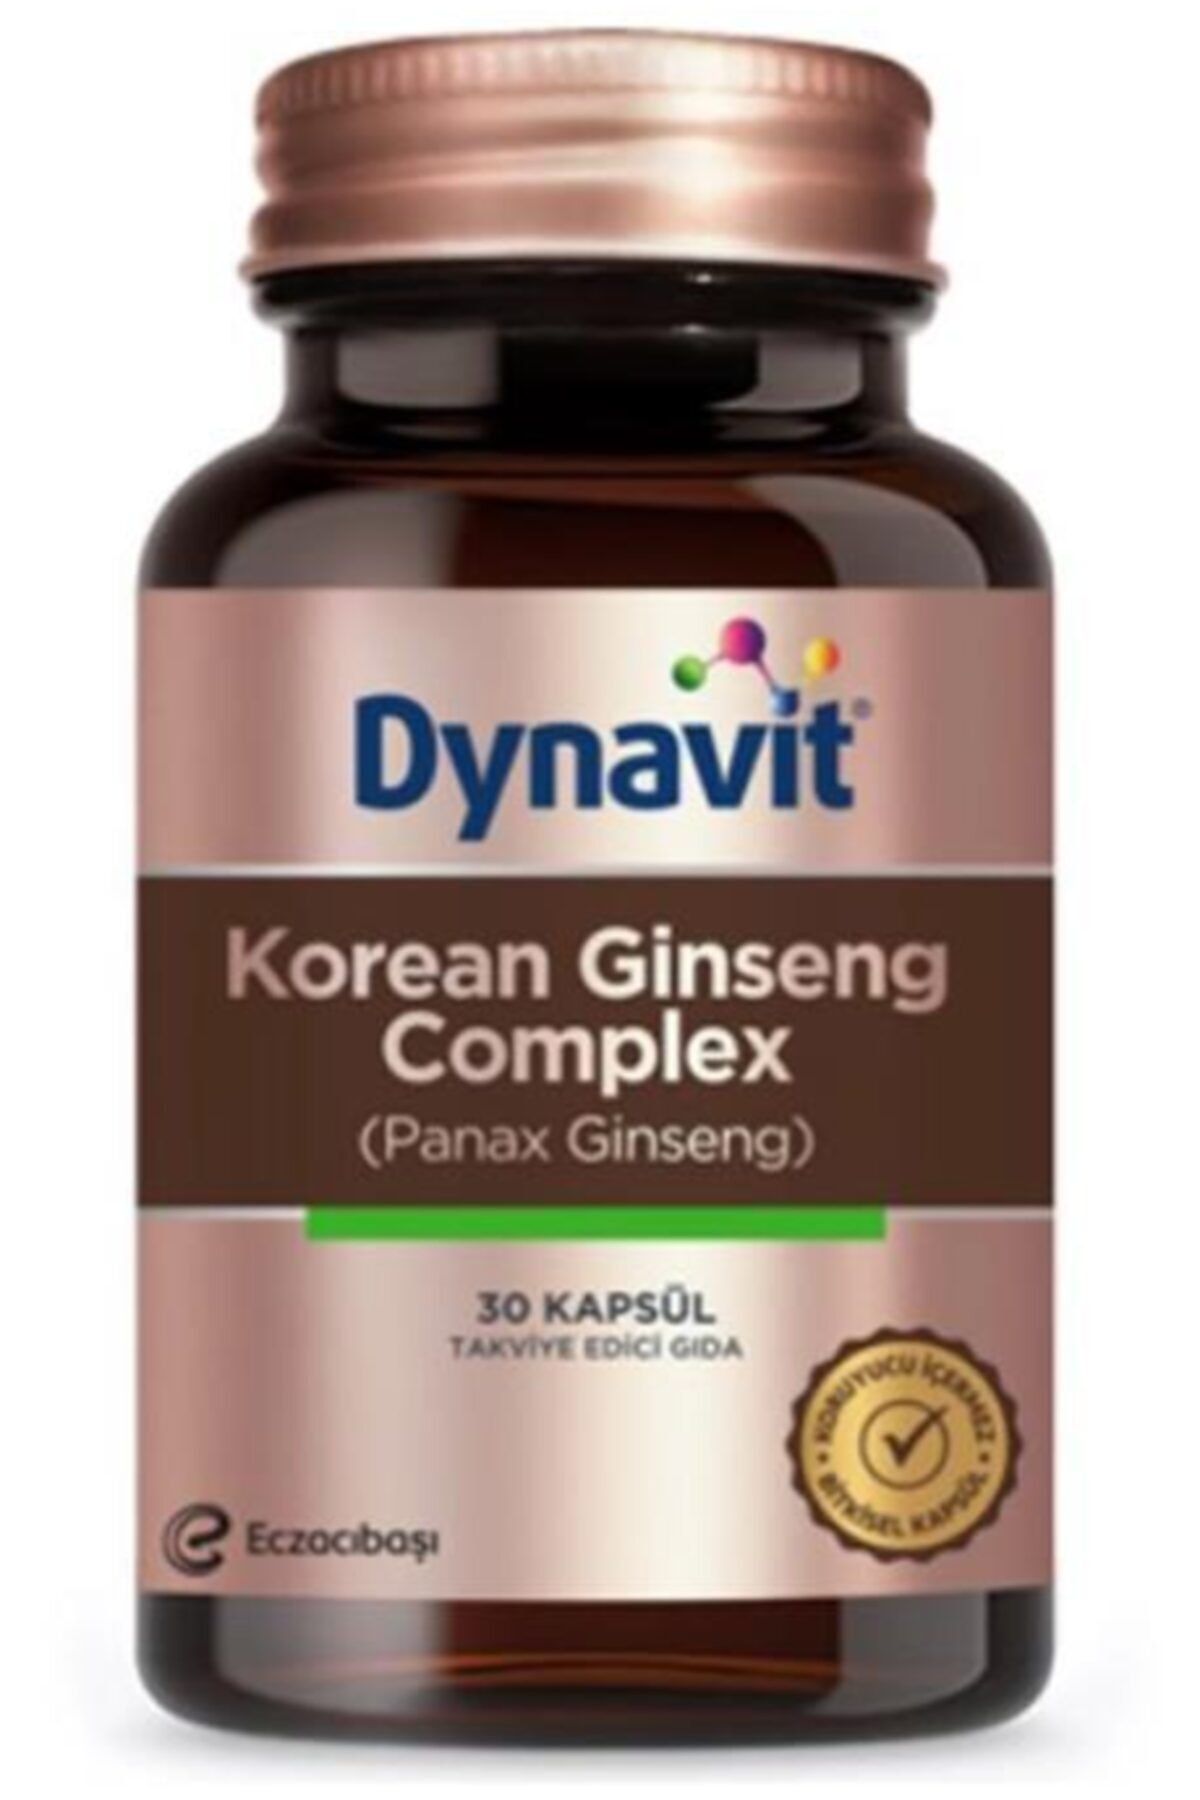 Dynavit Korean Ginseng (panax Ginseng) 30 Kapsül